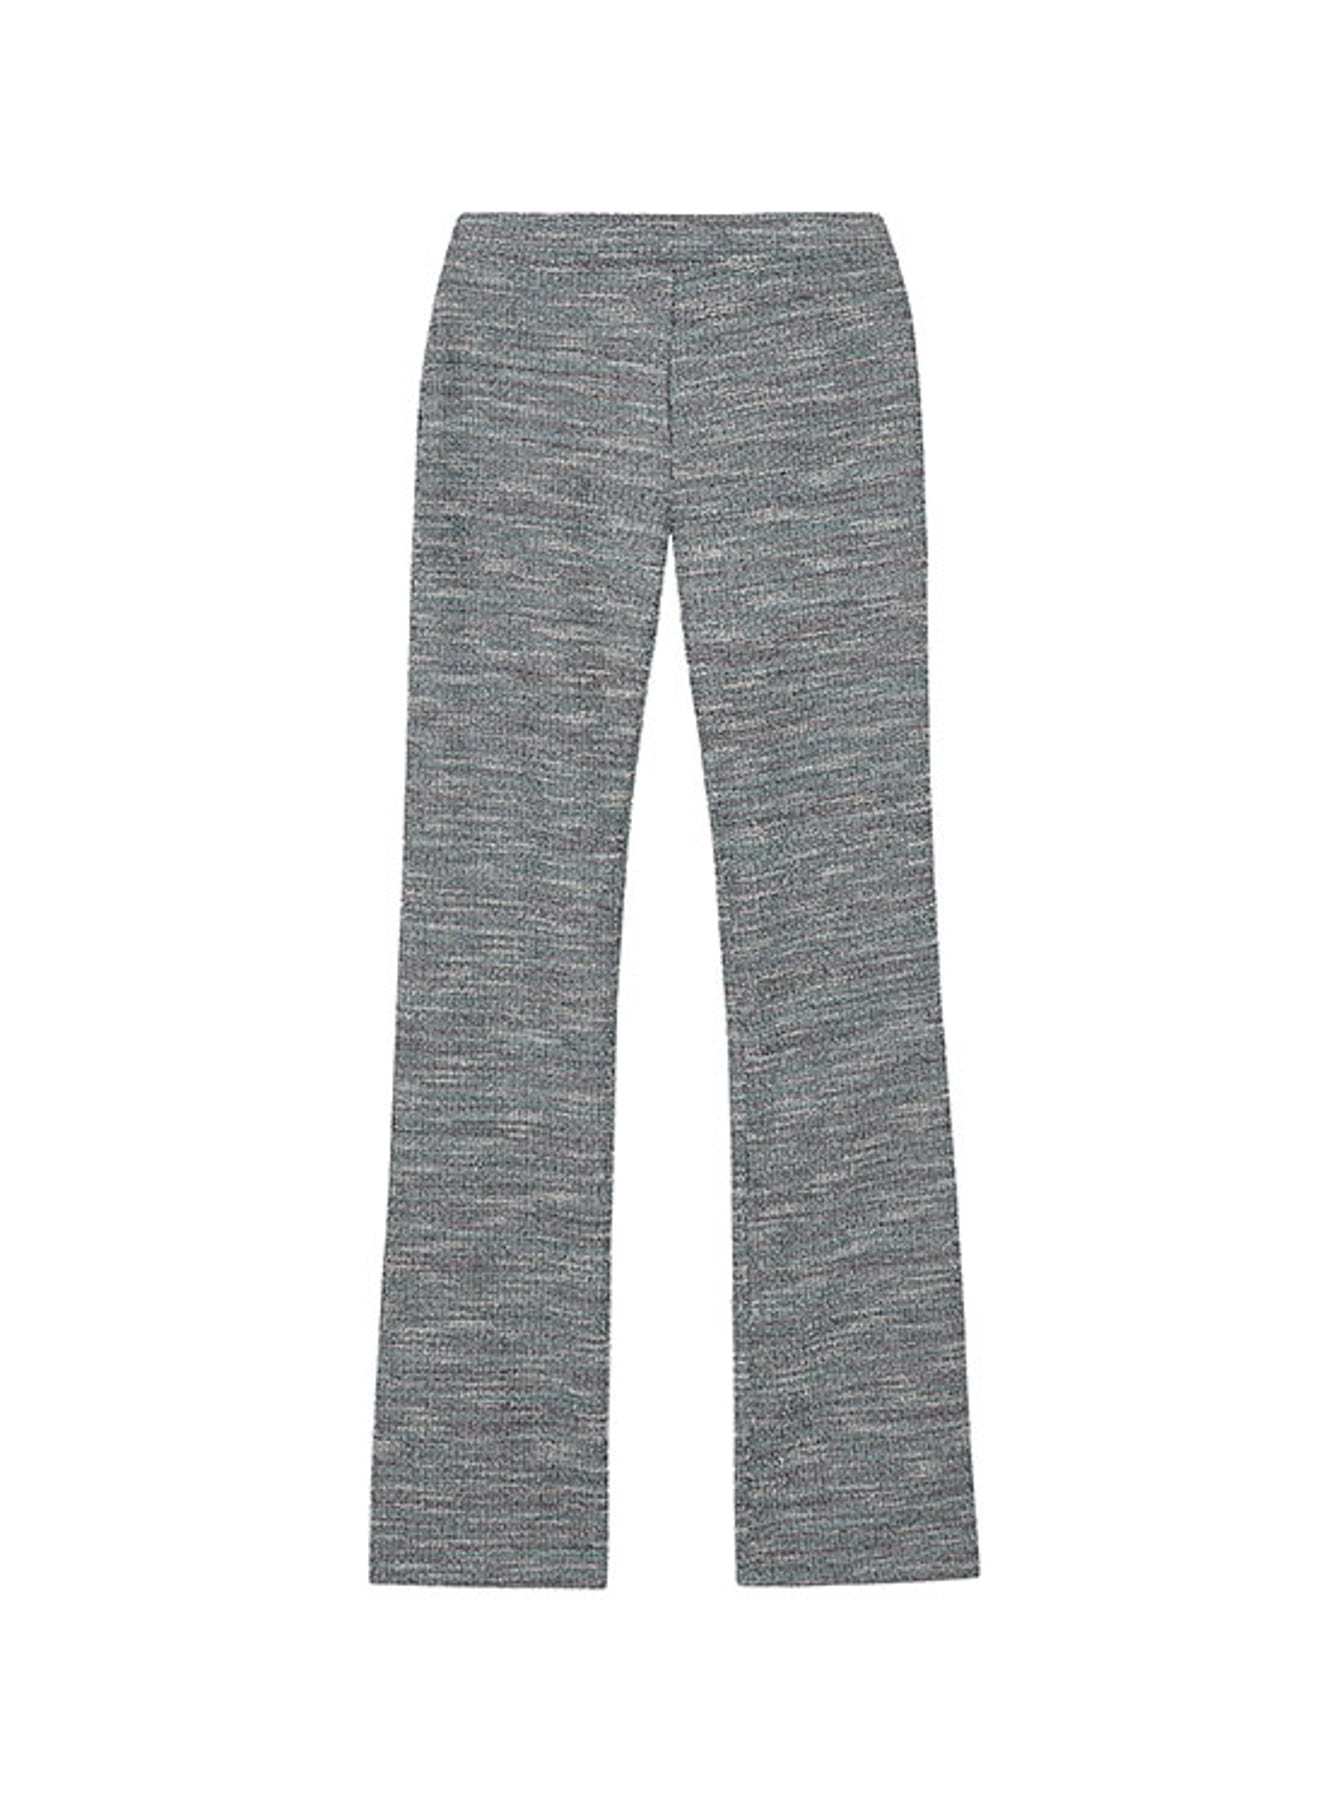 Tweed Pants in Navy VW2AL416-23